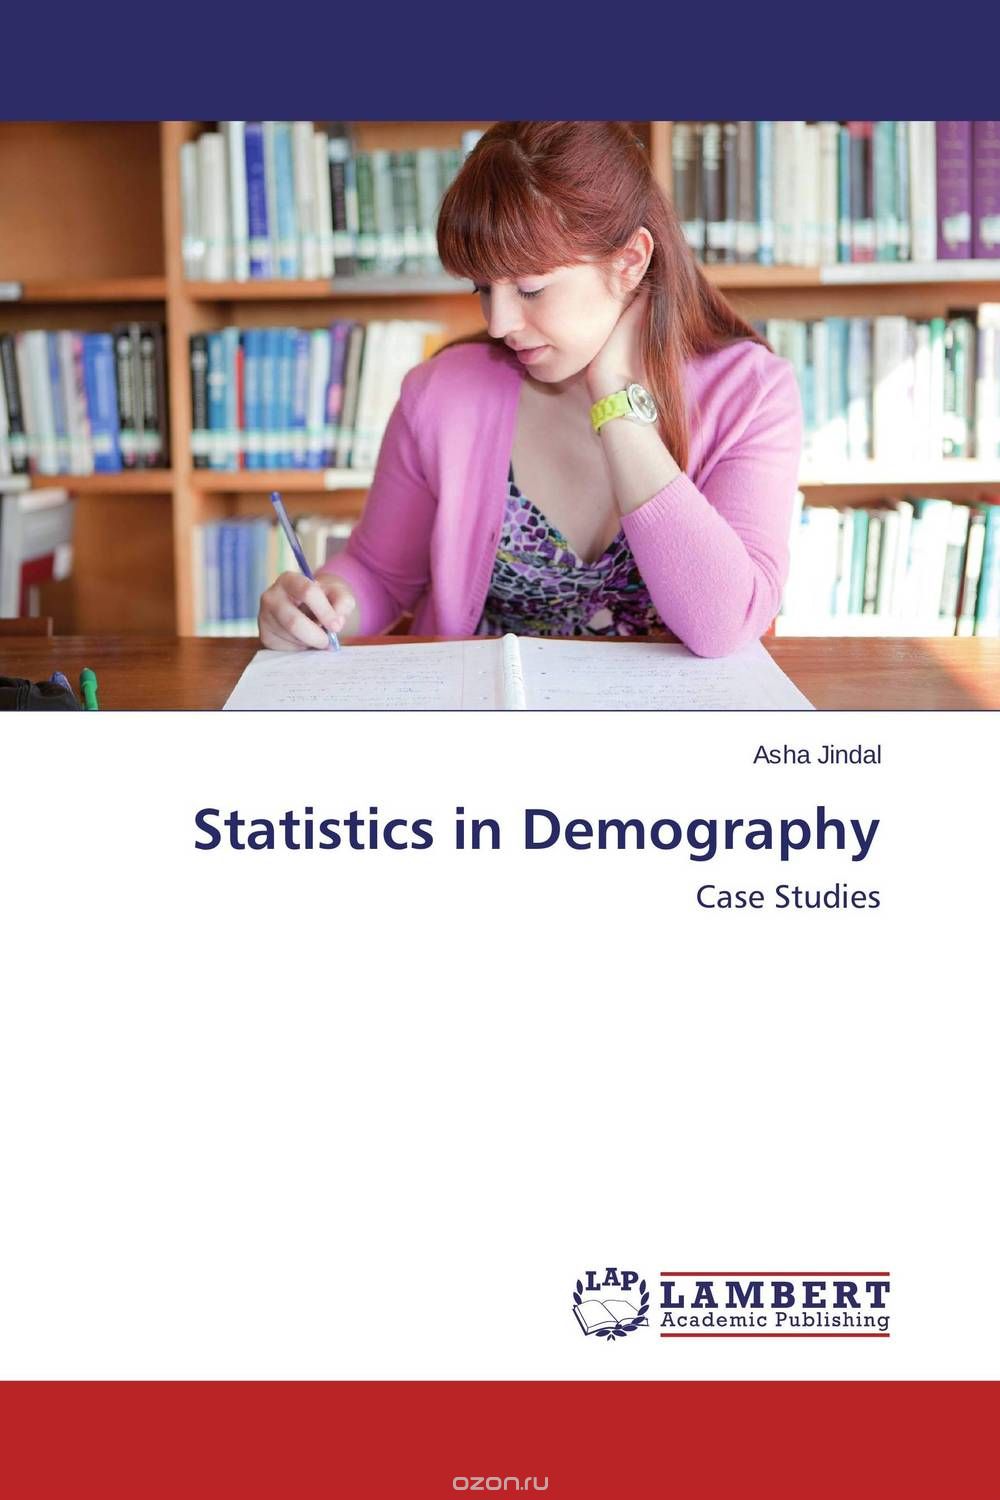 Скачать книгу "Statistics in Demography"